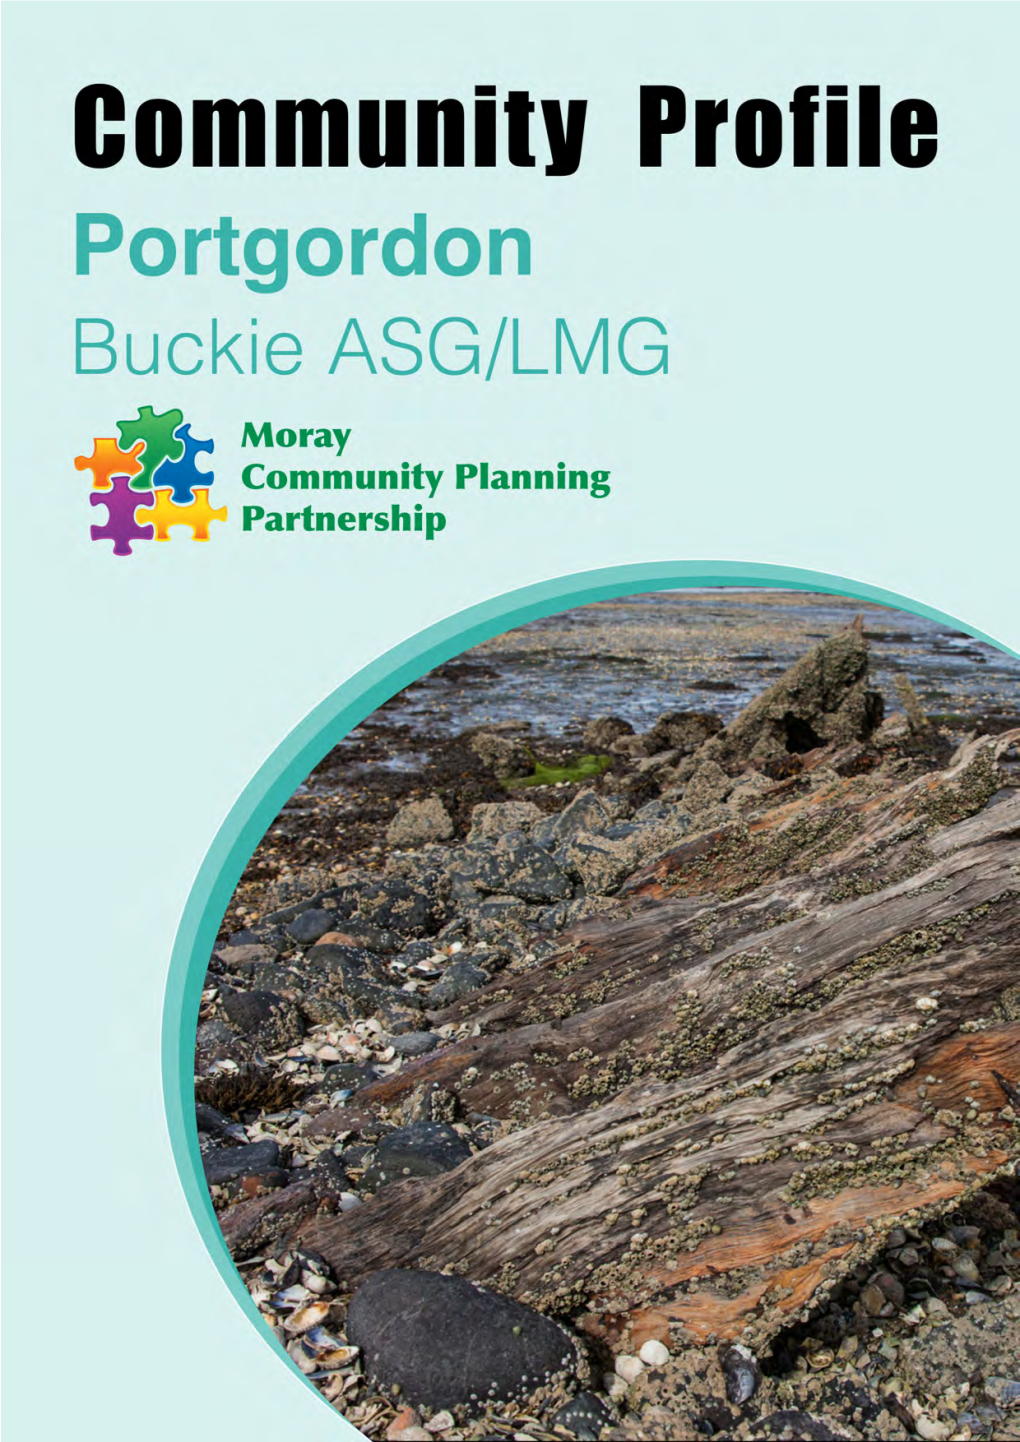 Portgordon, Moray